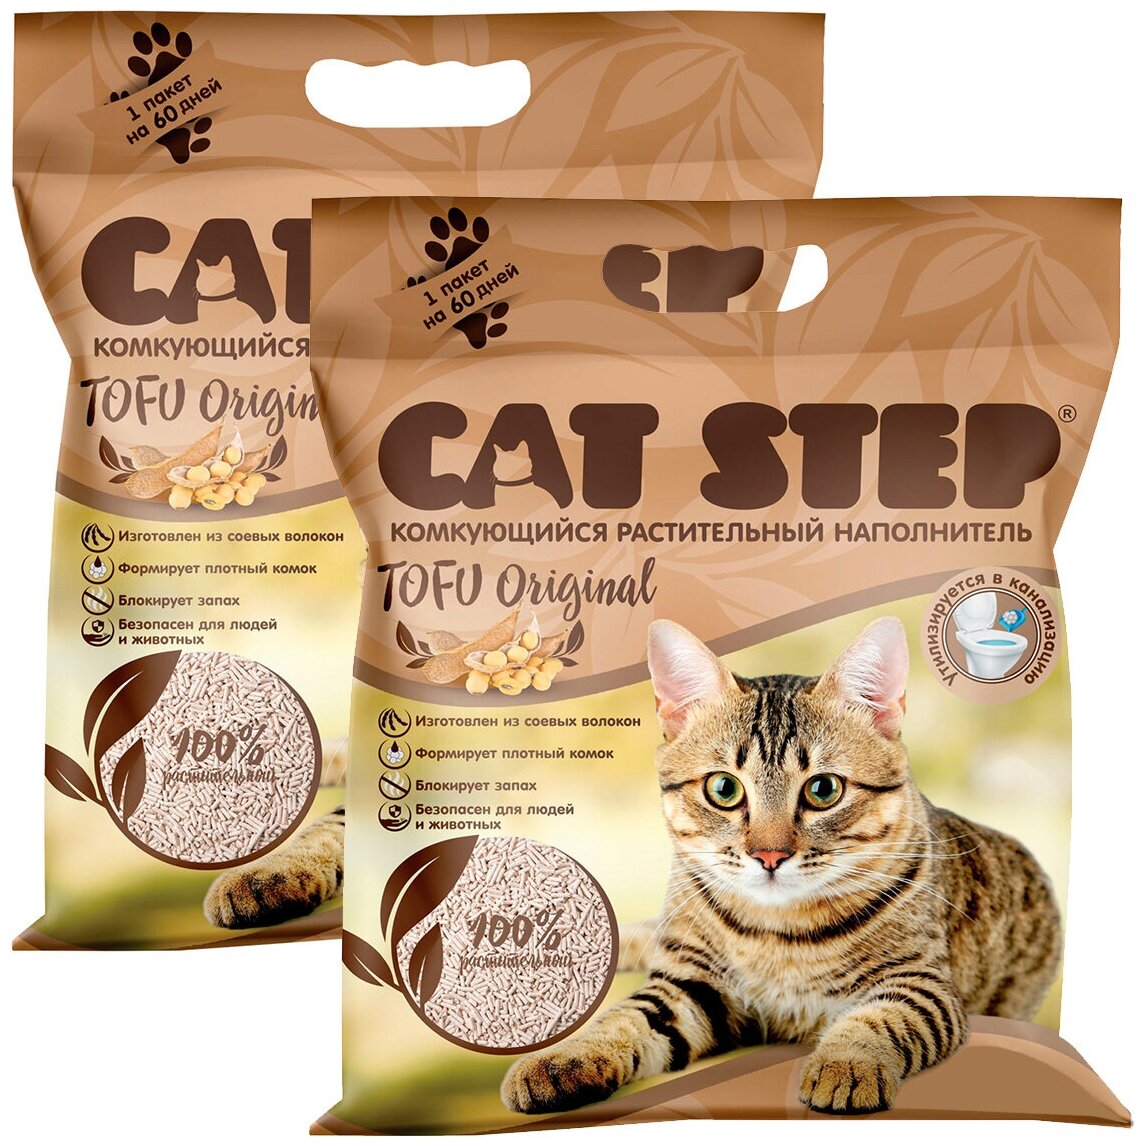 CAT STEP TOFU ORIGINAL - Кэт степ наполнитель комкующийся для туалета кошек (6 + 6 л)